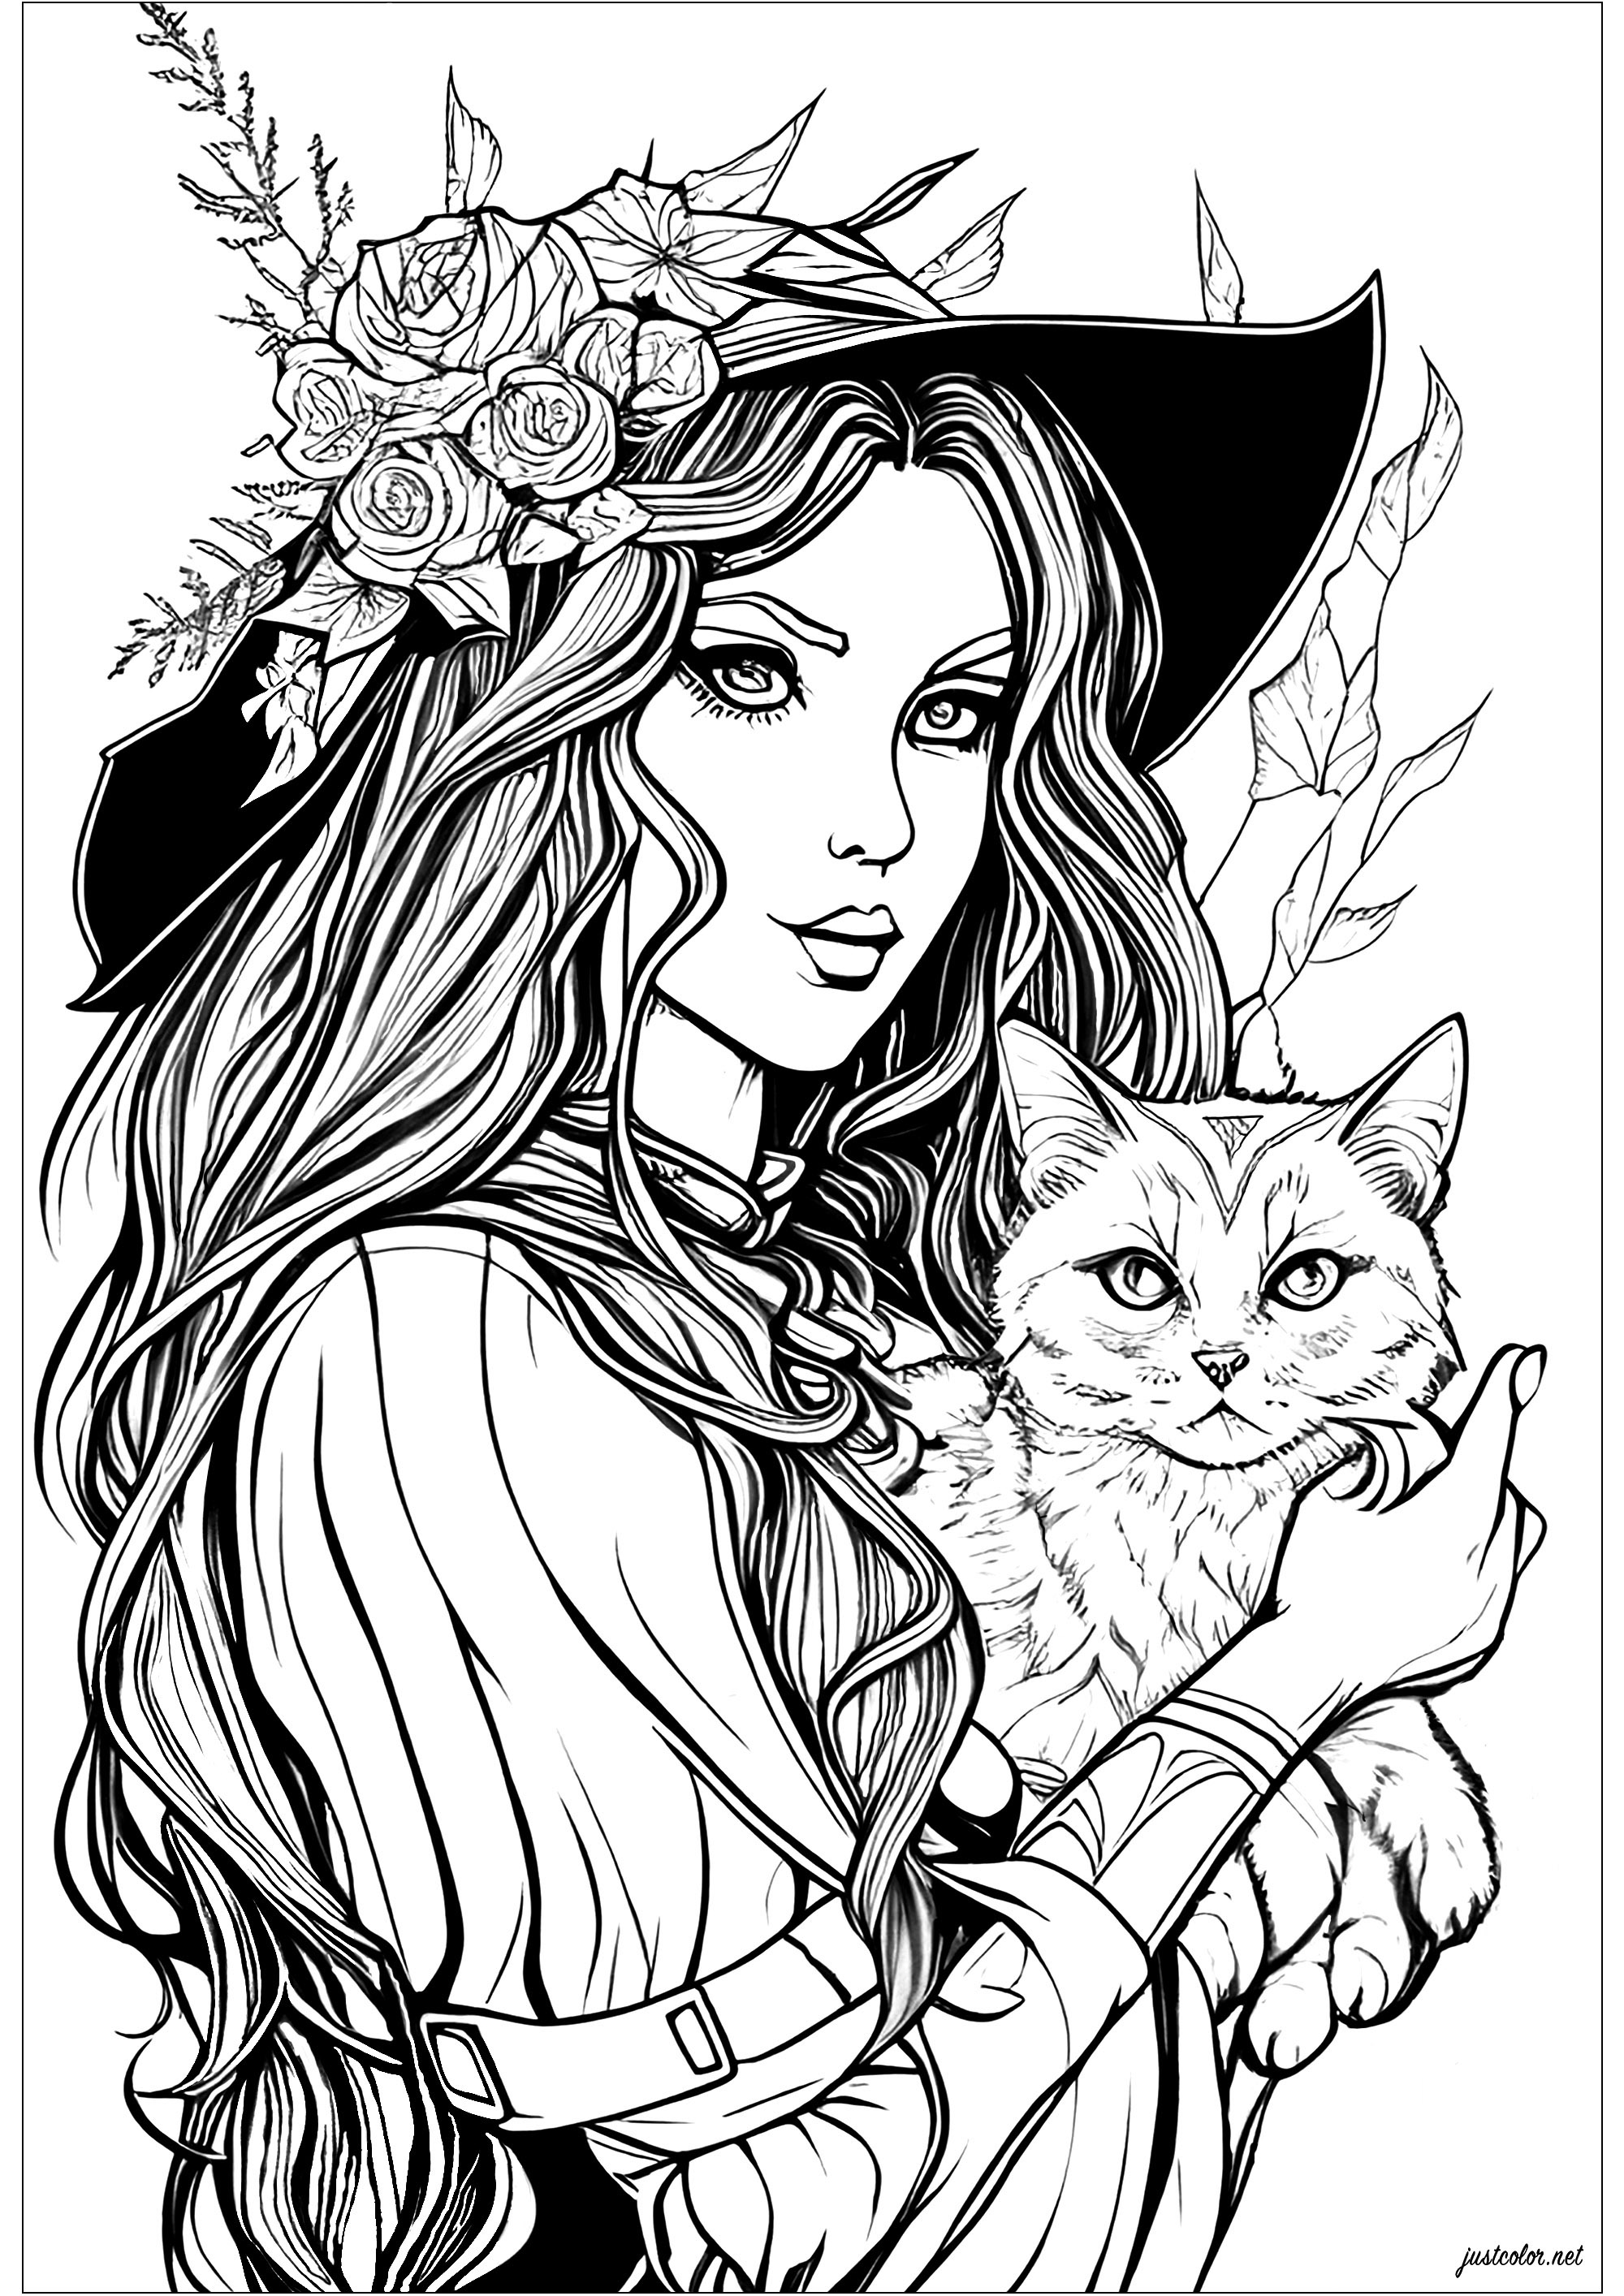 Ausmalbild von einer Hexe mit bezauberndem Blick und ihrer schelmischen Katze. Eine böse Malvorlage, mit vielen Details und mit sehr realistischen Motiven.